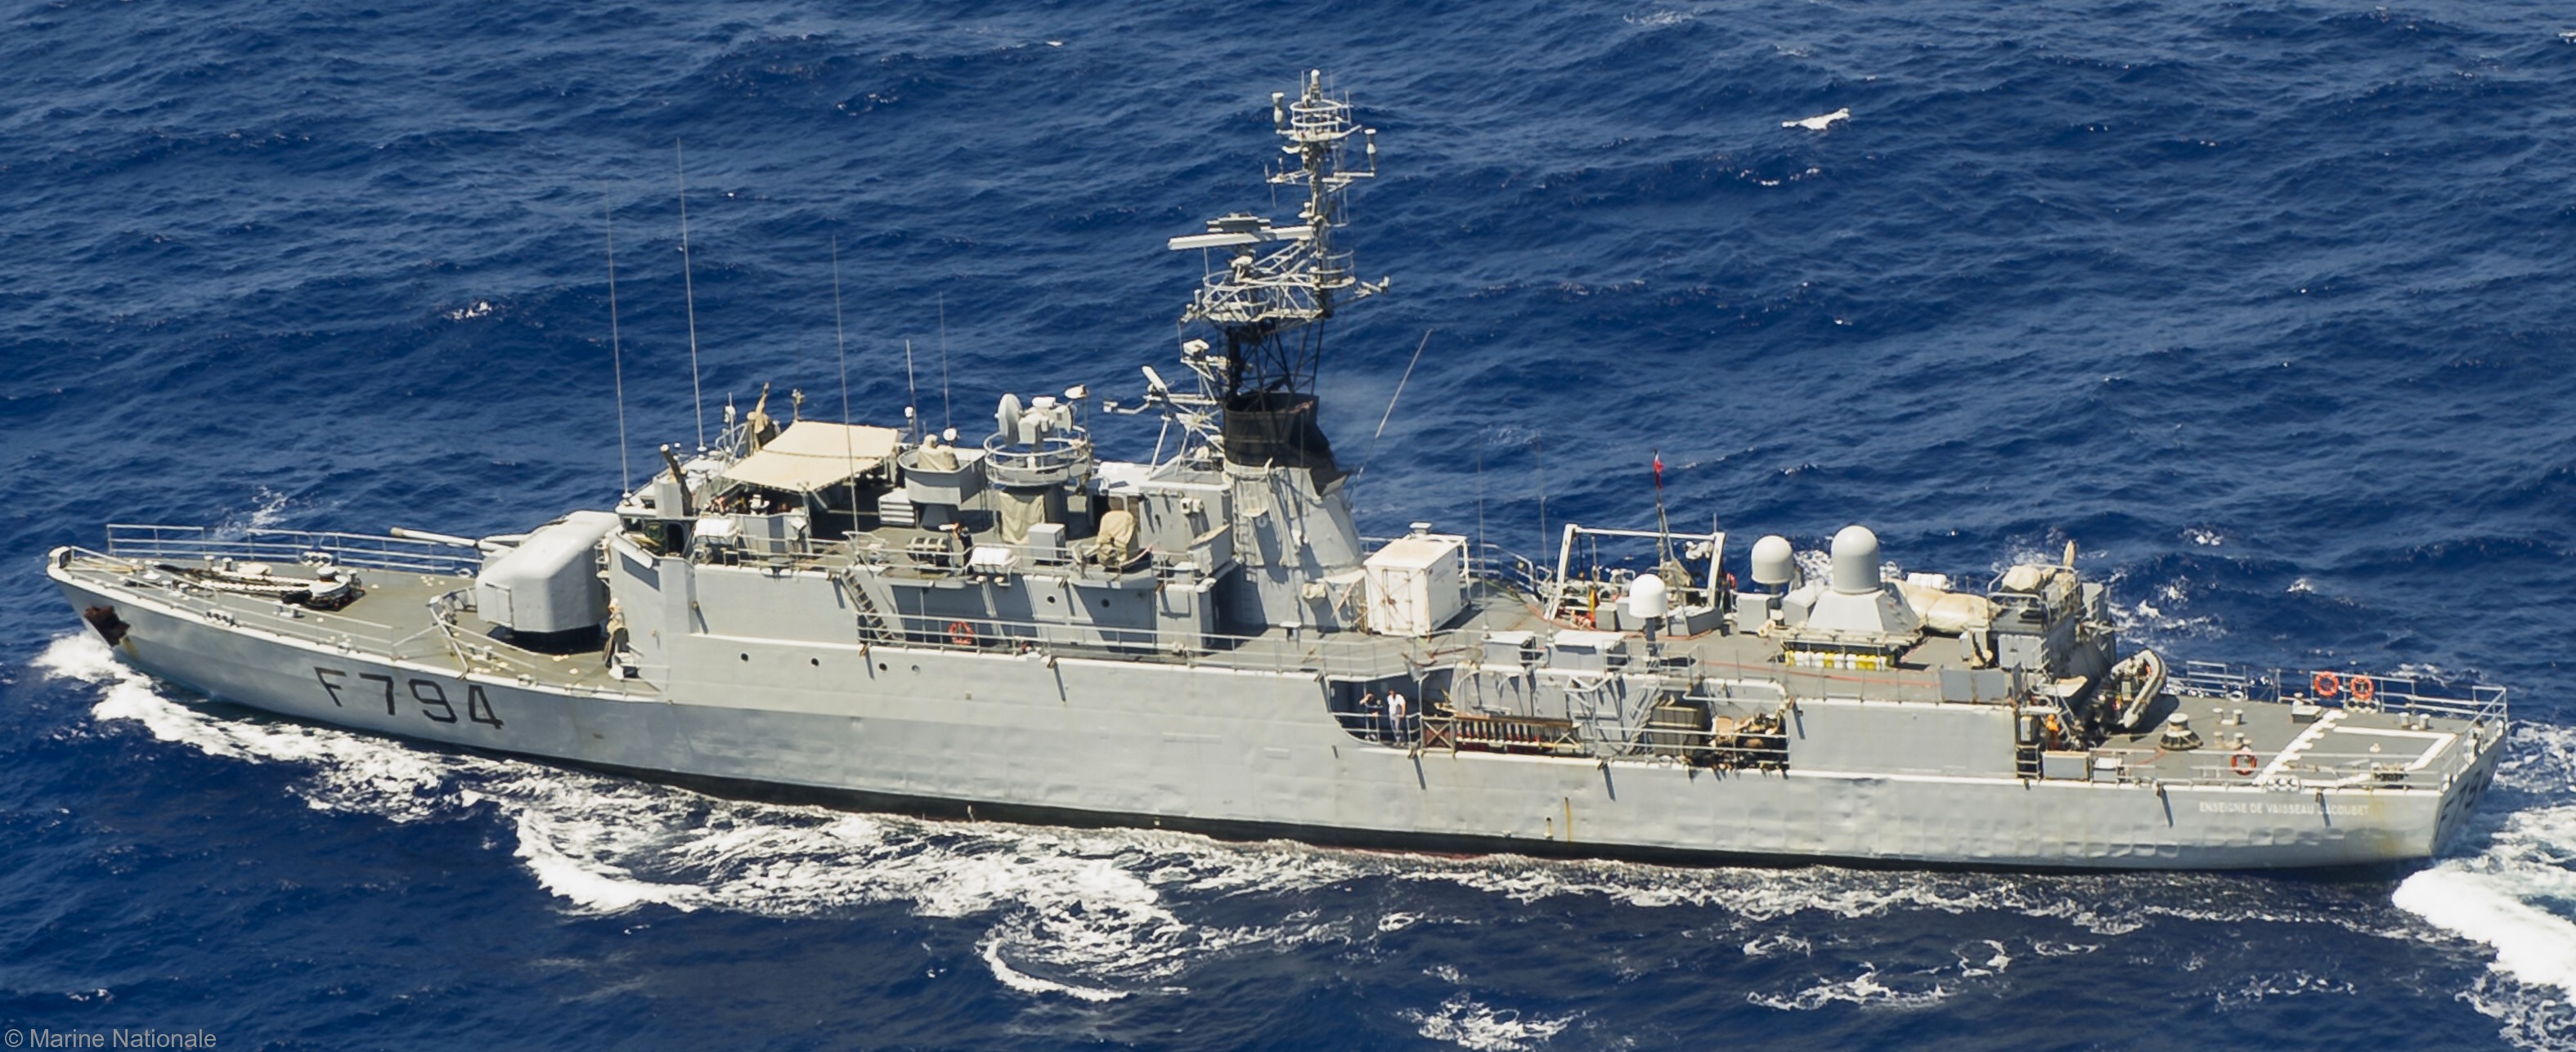 f-794 fs enseigne de vaisseau jacoubet d'estienne d'orves class corvette type a69 aviso french navy marine nationale 05